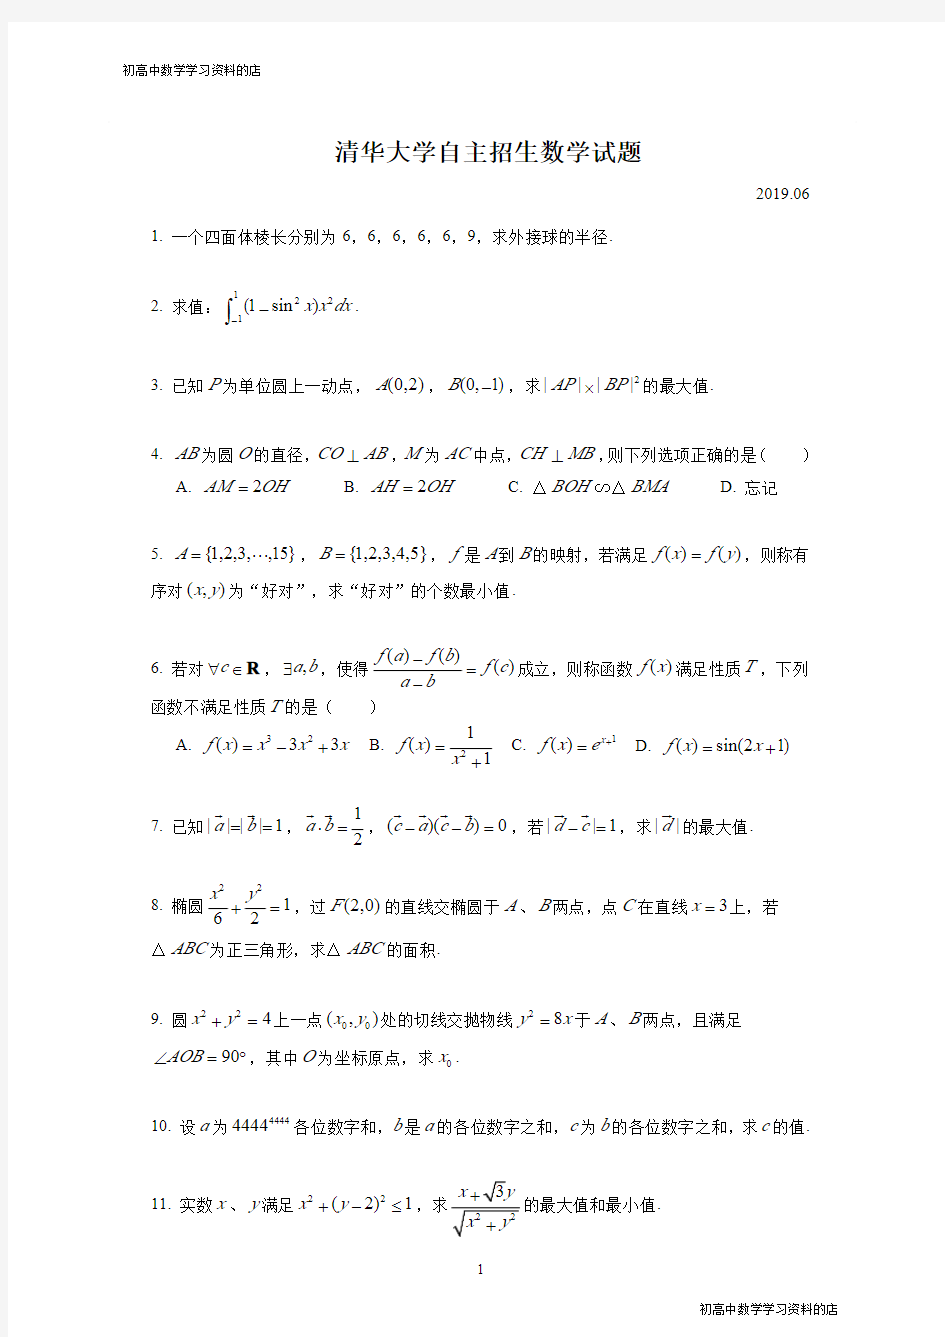 清华大学2019年自主招生数学试题(含详细解析)